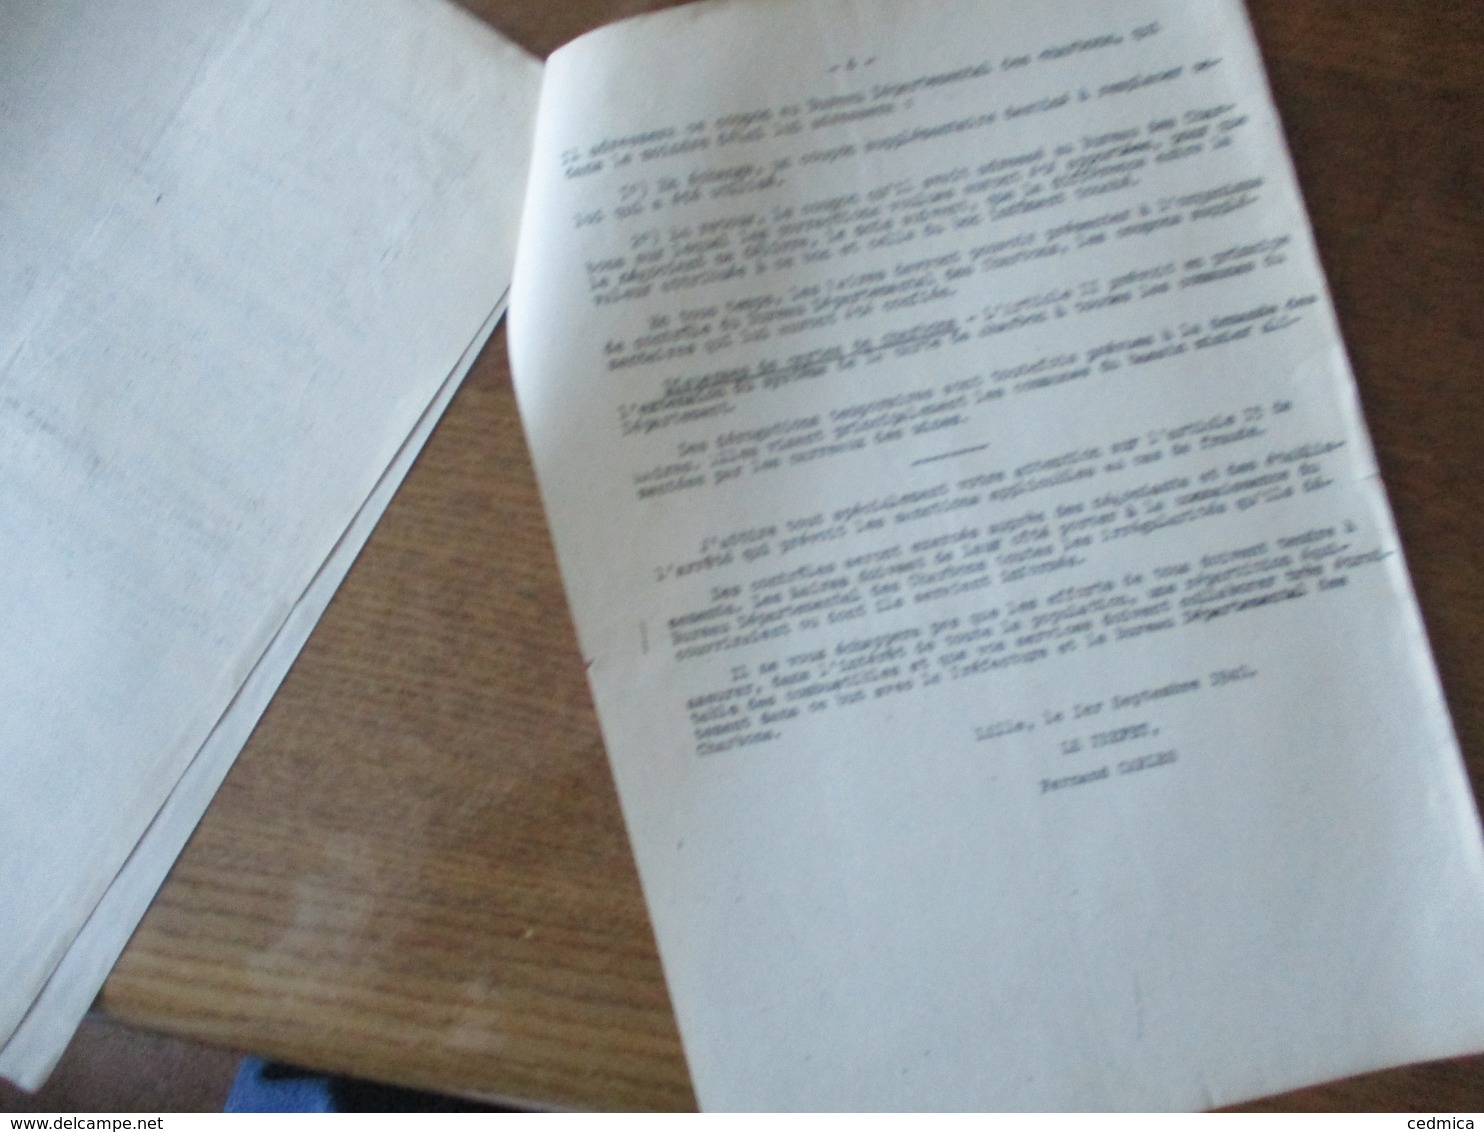 LILLE LE 1er SEPTEMBRE 1940 CIRCULAIRE RELATIVE A LA MISE EN VIGUEUR DE LA CARTE DE CHARBON LE PREFET F.CARLES 4 PAGES - Documents Historiques